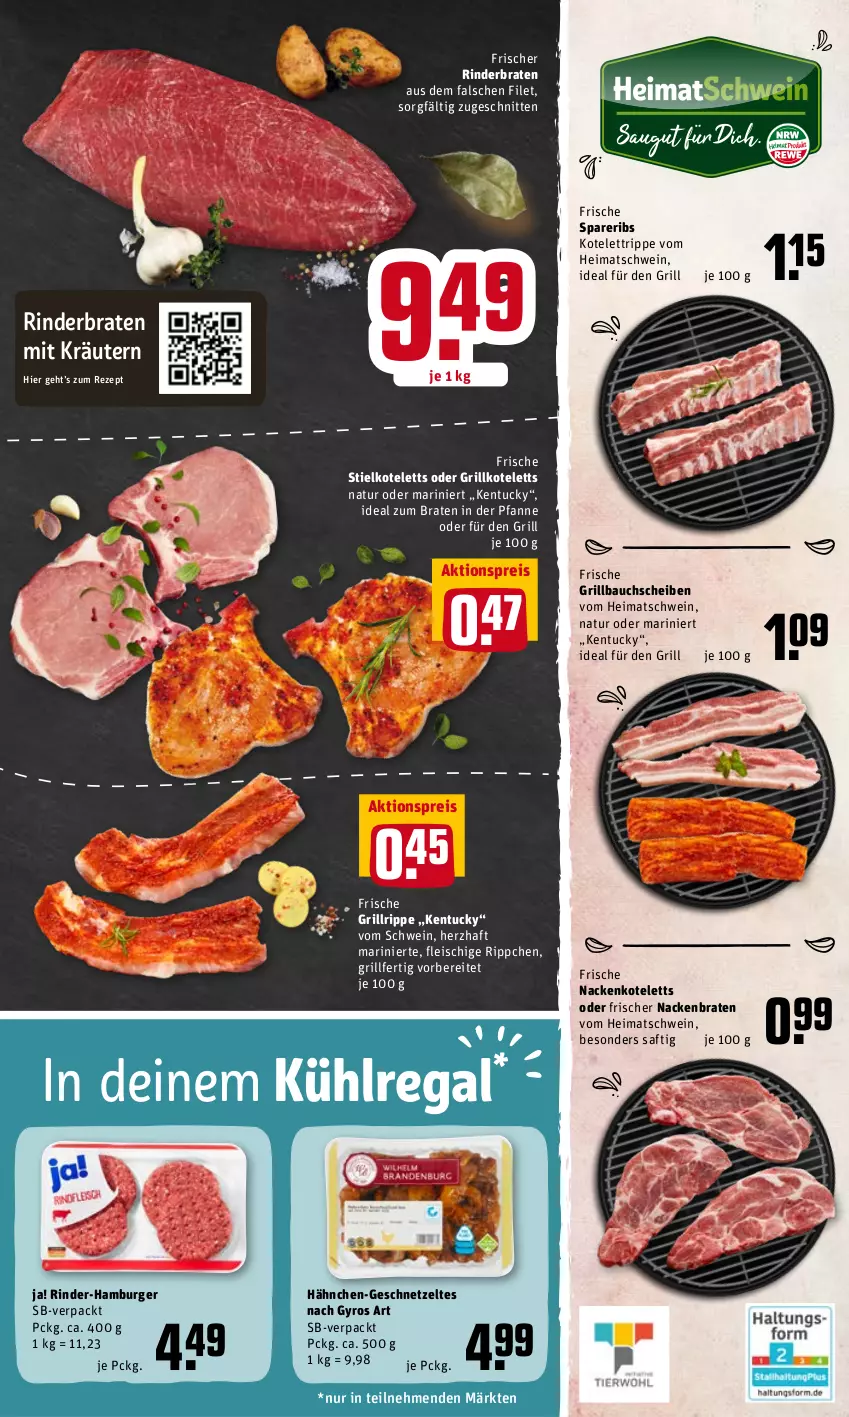 Aktueller Prospekt Rewe - Diese Woche im Angebot! - von 25.04 bis 30.04.2022 - strona 5 - produkty: aktionspreis, Bau, bauchscheiben, braten, burger, eis, filet, fleisch, geschnetzeltes, grill, Grillbauch, grillkotelett, grillkoteletts, grillrippe, gyros, hamburger, ideal zum braten, kotelett, kräuter, kräutern, kühlregal, nackenkoteletts, natur, pfanne, regal, reis, rezept, rind, rinder, rinderbraten, saft, schnitten, schwein, spareribs, Ti, tuc, wein, Zelt